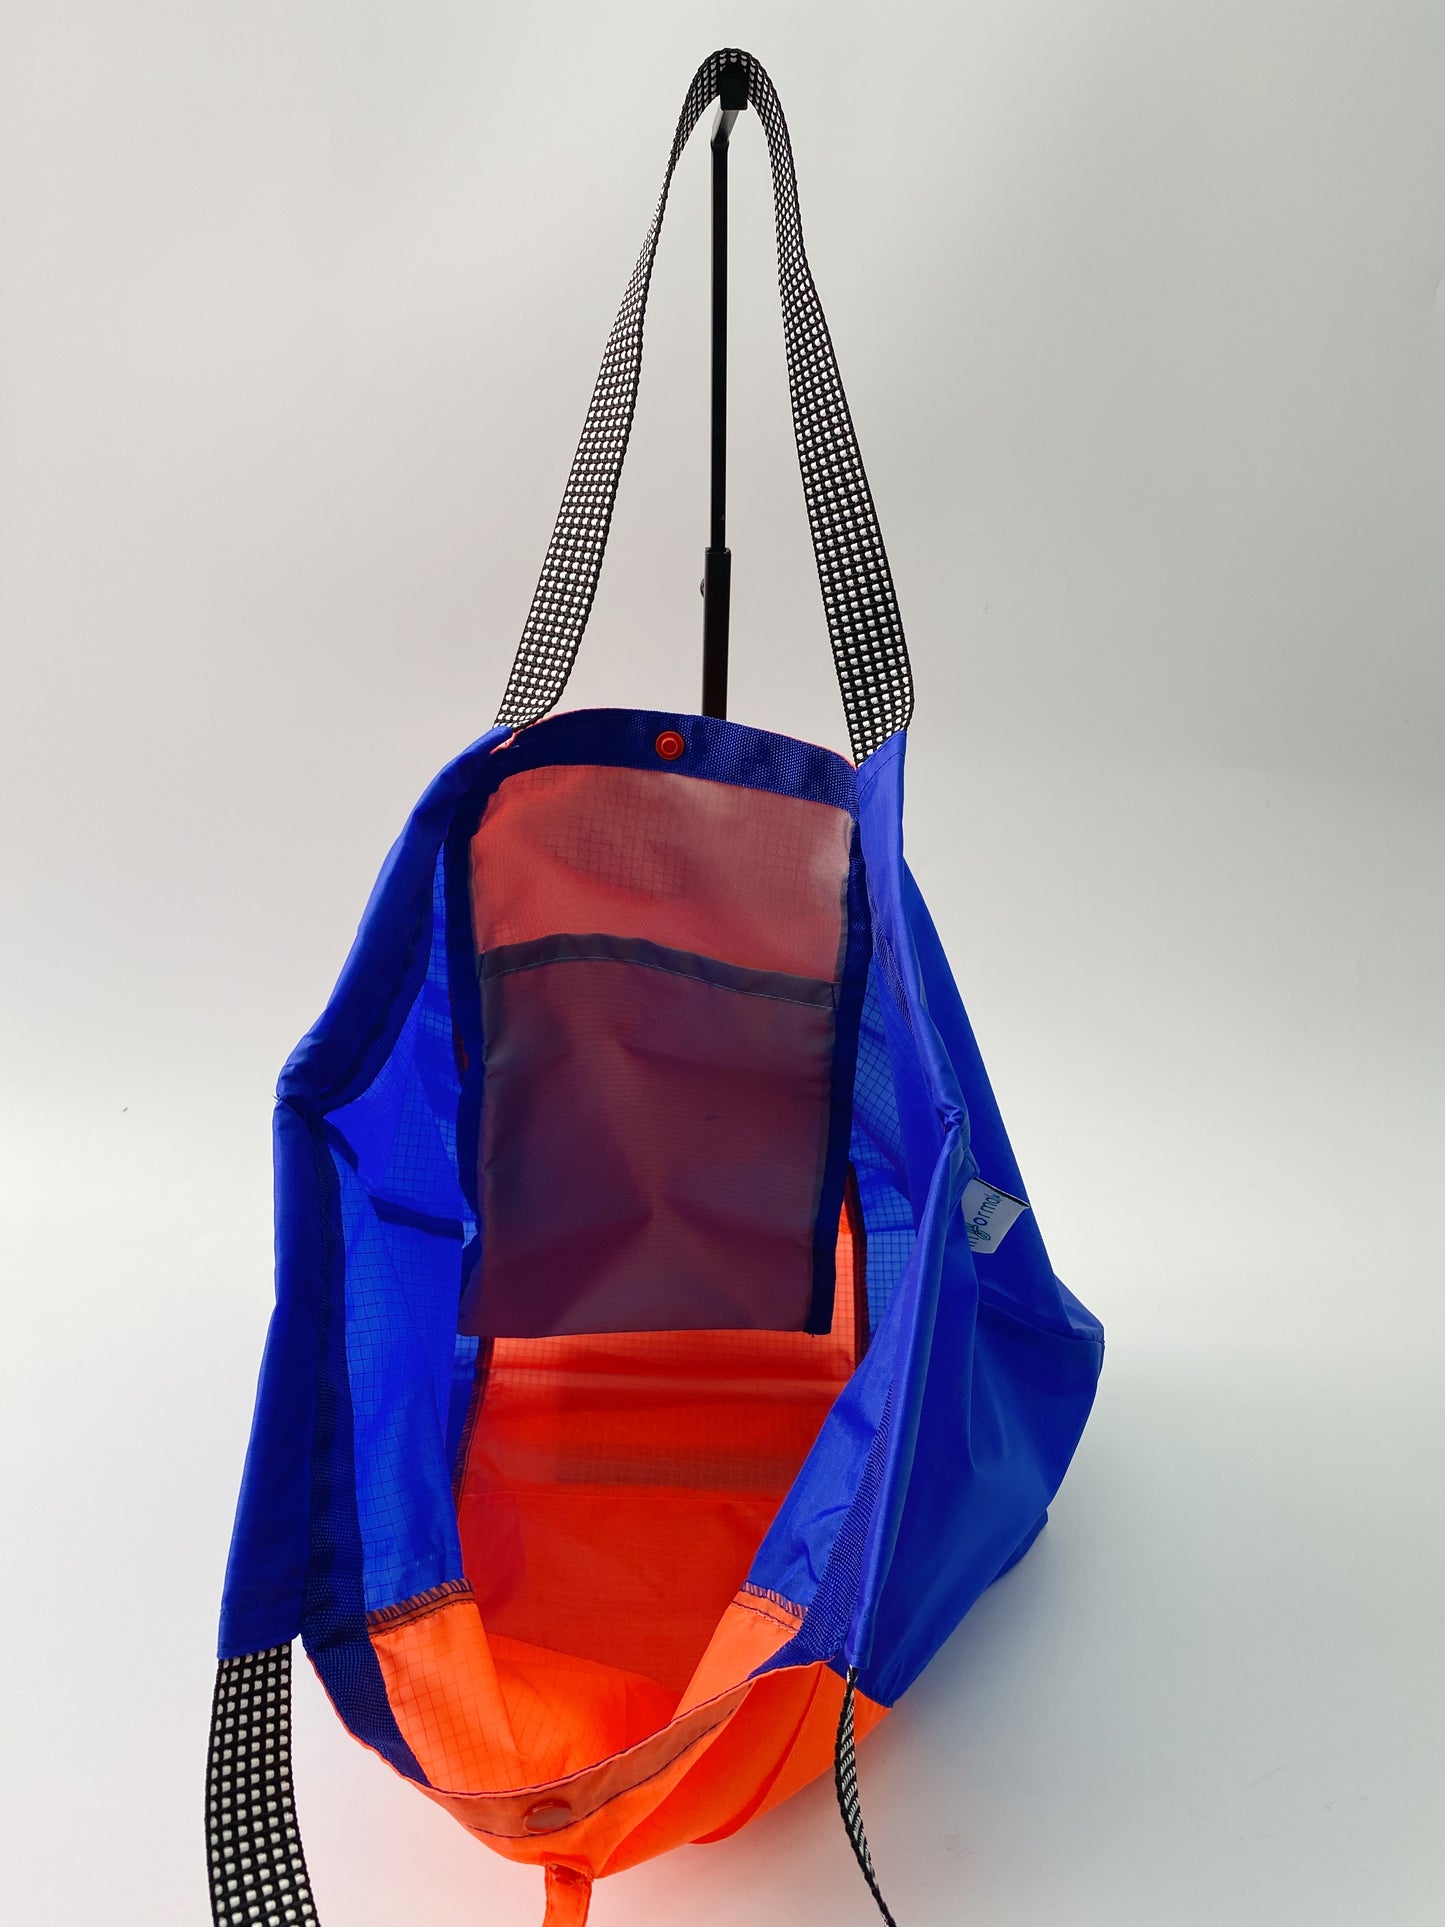 Informal Bag Multicolors Checkout Bag (Orange & Easy blue)